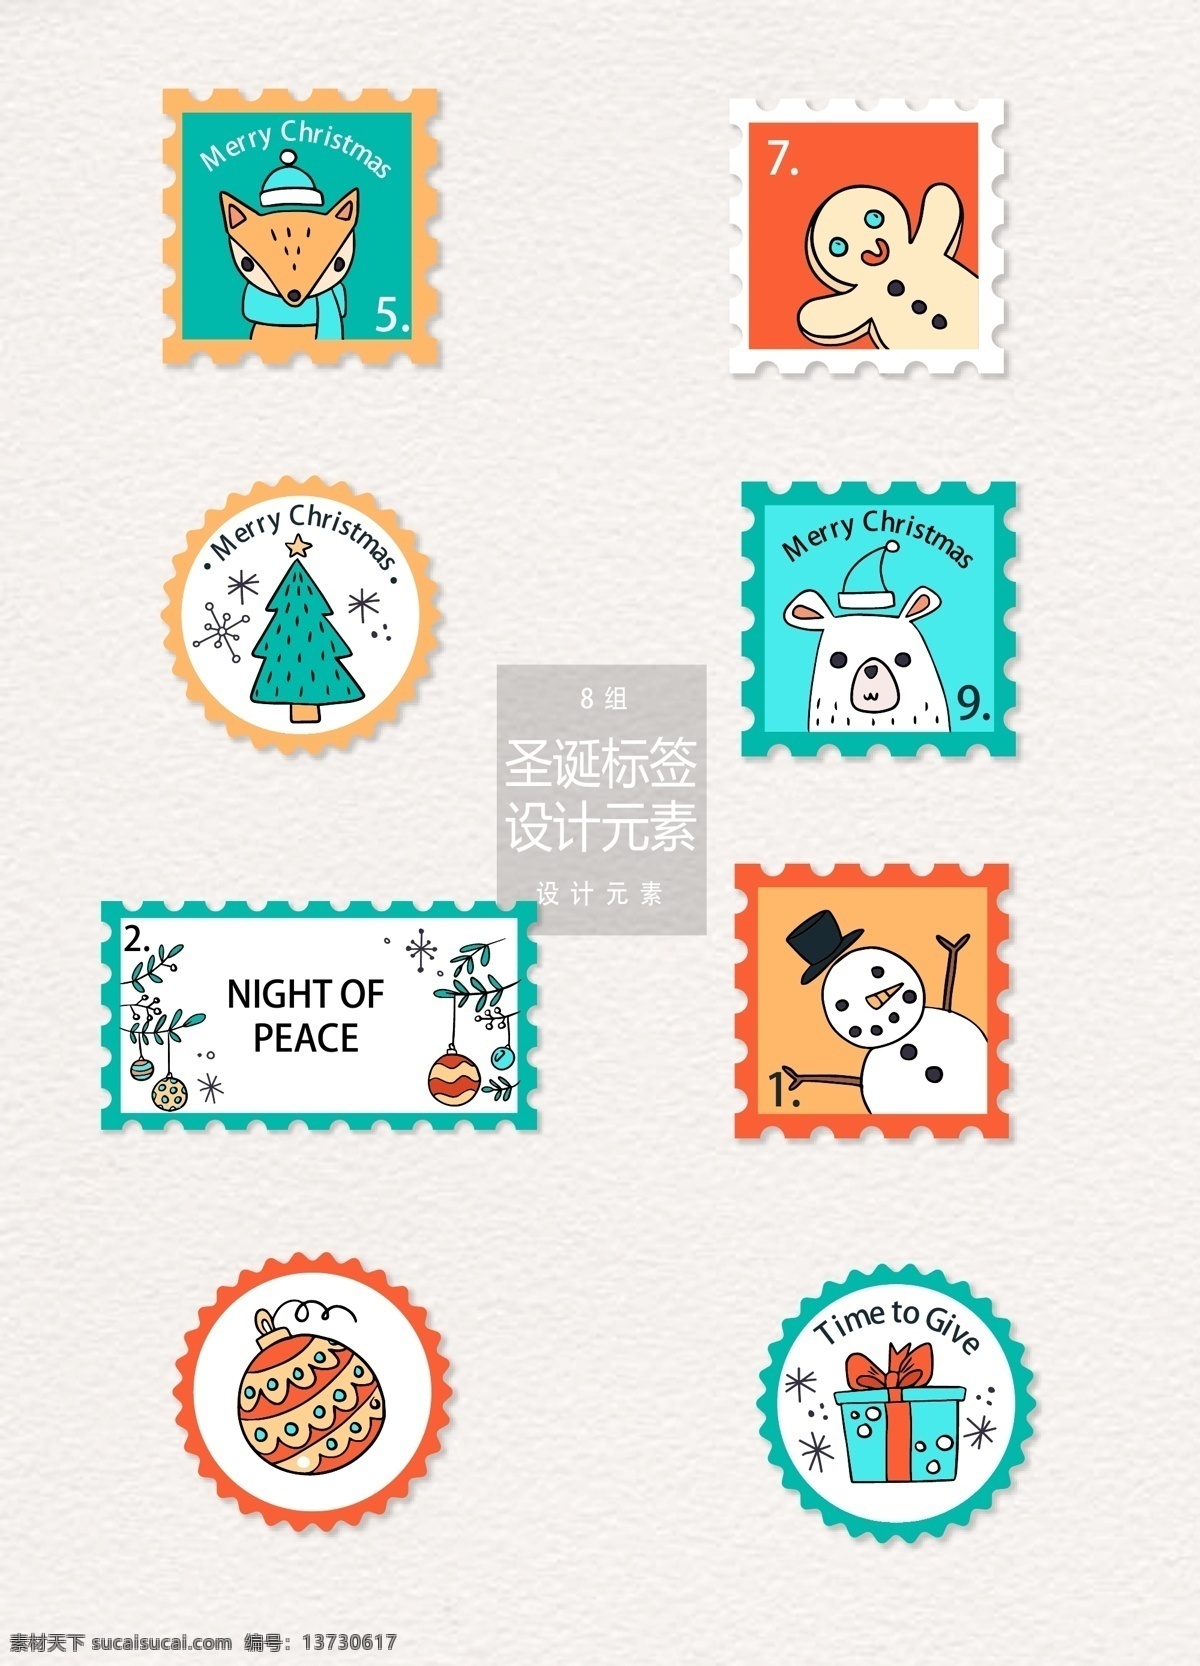 圣诞 邮票 标签 元素 圣诞节 设计元素 狐狸 圣诞树 圣诞邮票 圣诞标签 手绘动物 北极熊 圣诞球